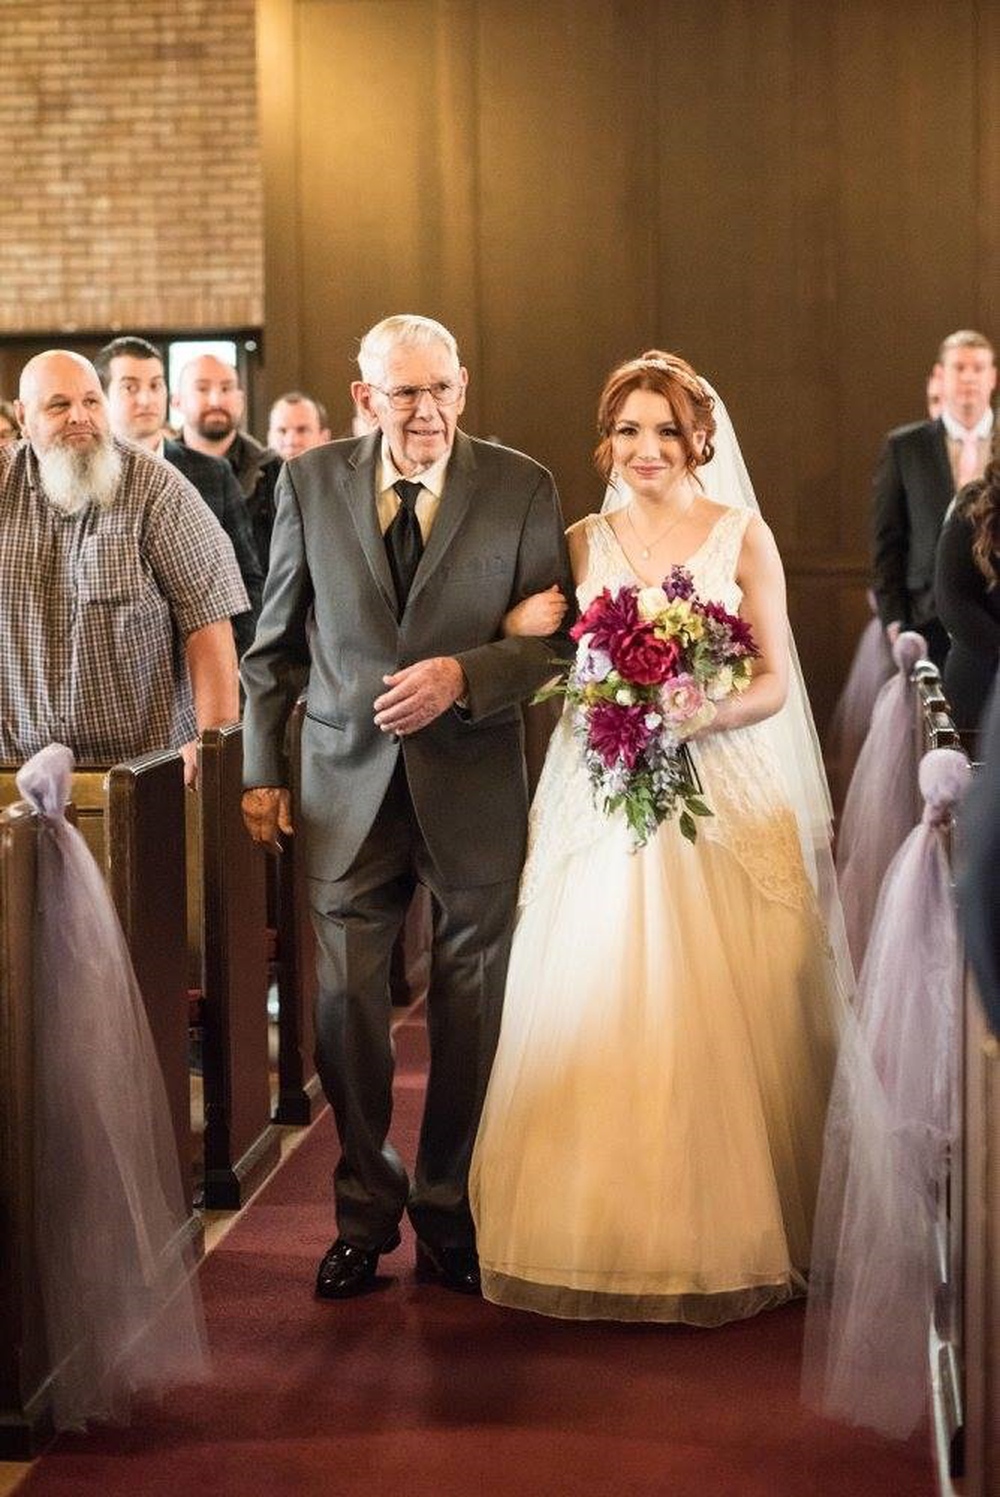 Váy cưới ‘vượt thời gian’ 60 năm được 3 thế hệ cô dâu cùng 1 nhà mặc khi kết hôn - Ảnh 4.